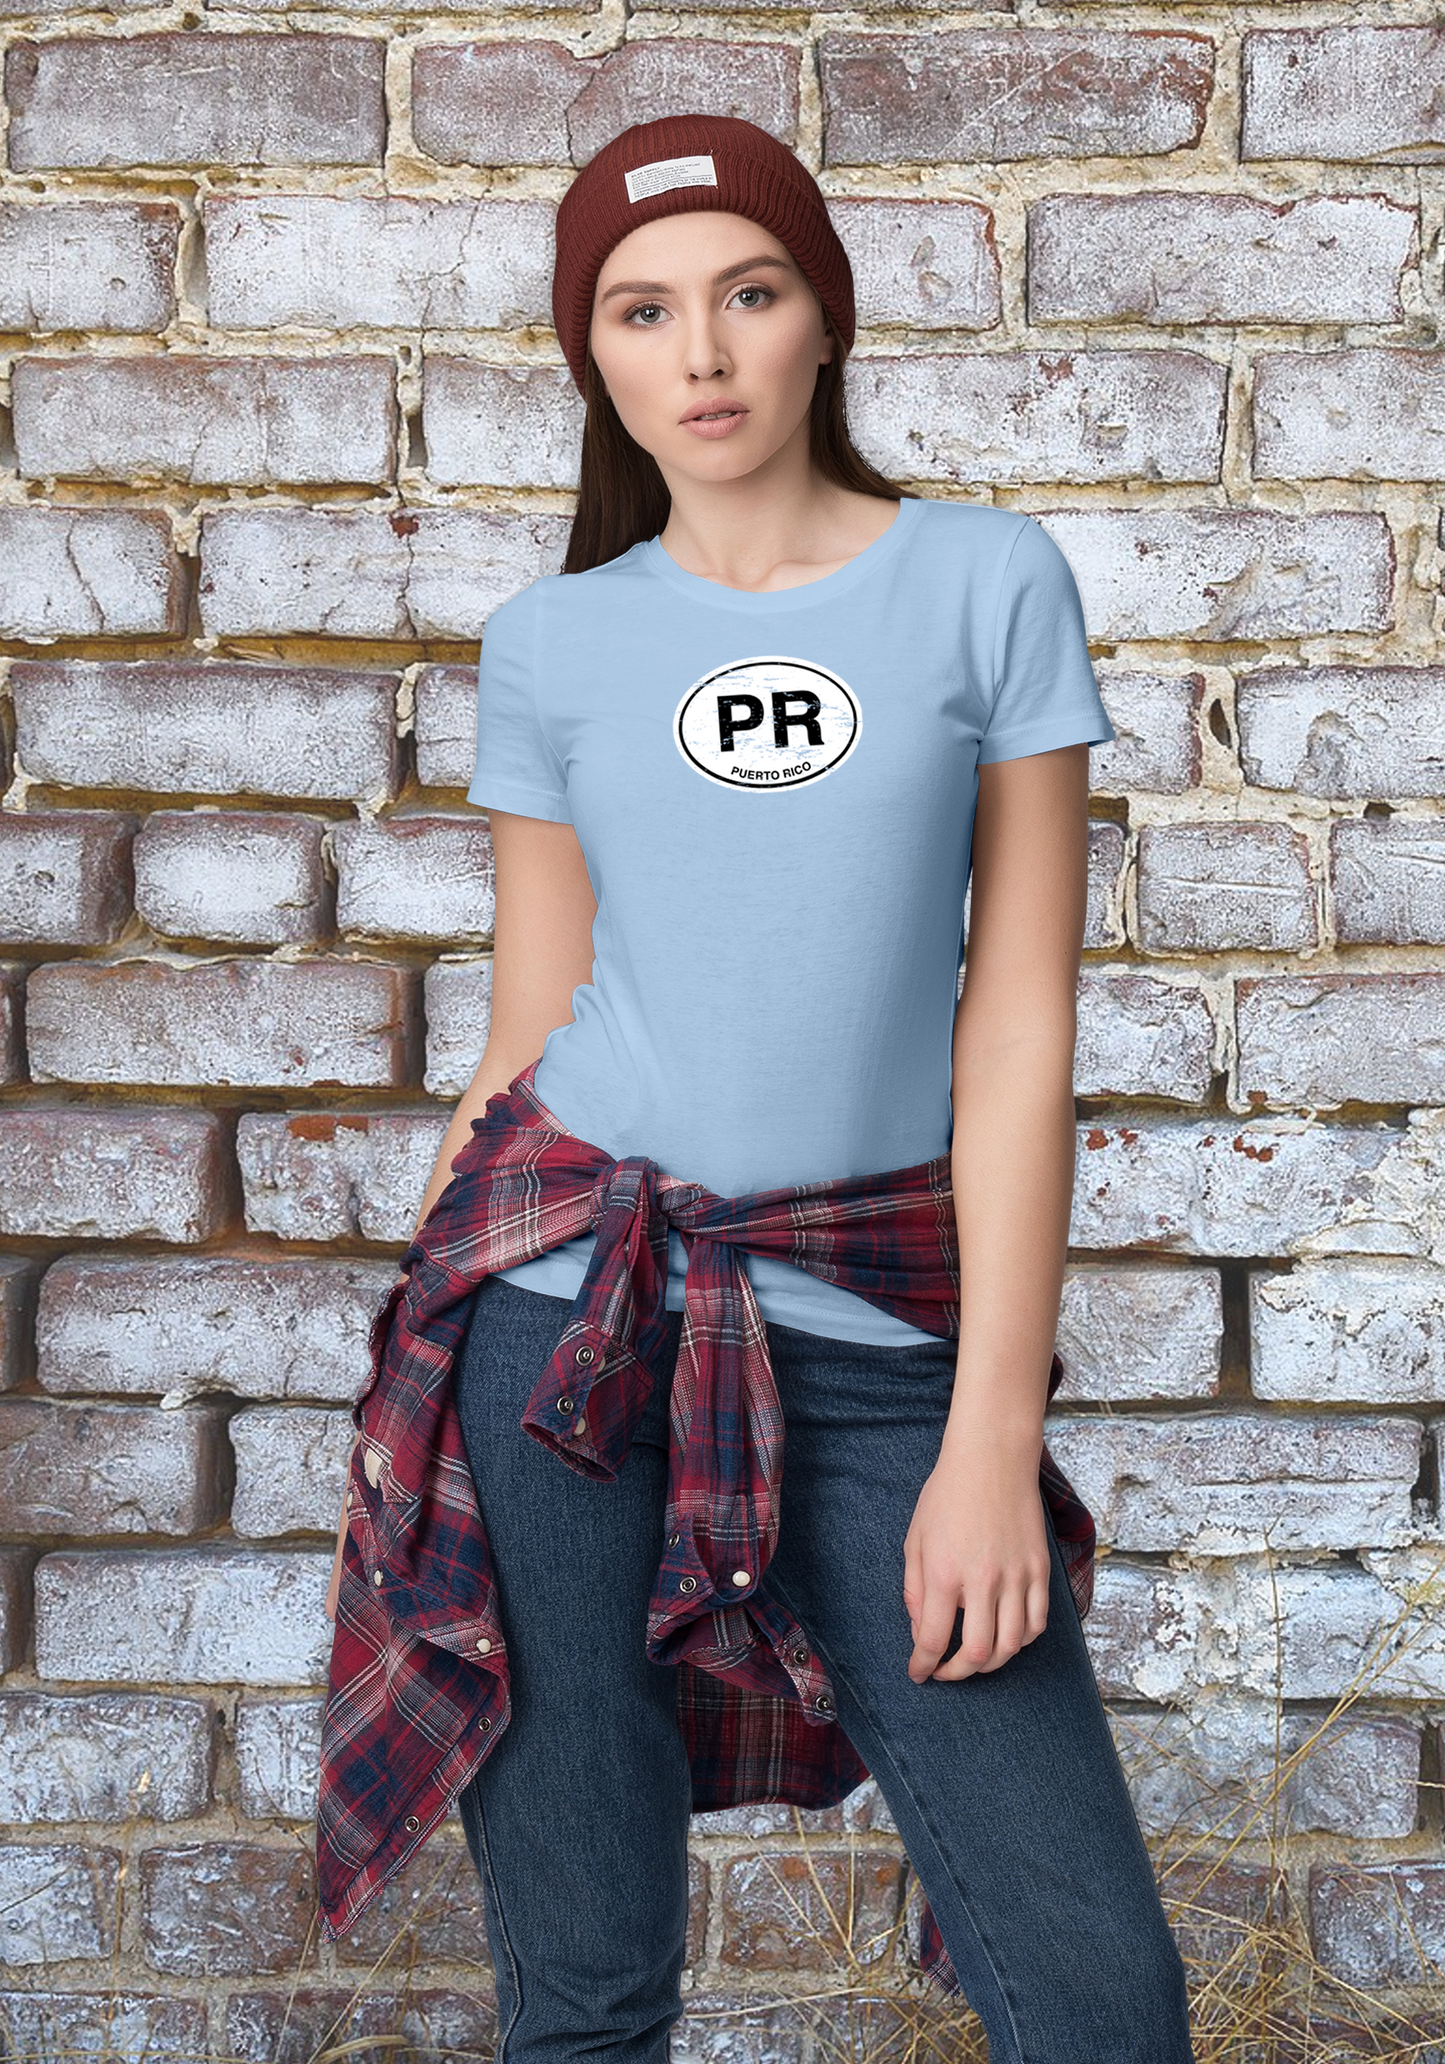 Puerto Rico Women's Classic T-Shirt Souvenirs - My Destination Location